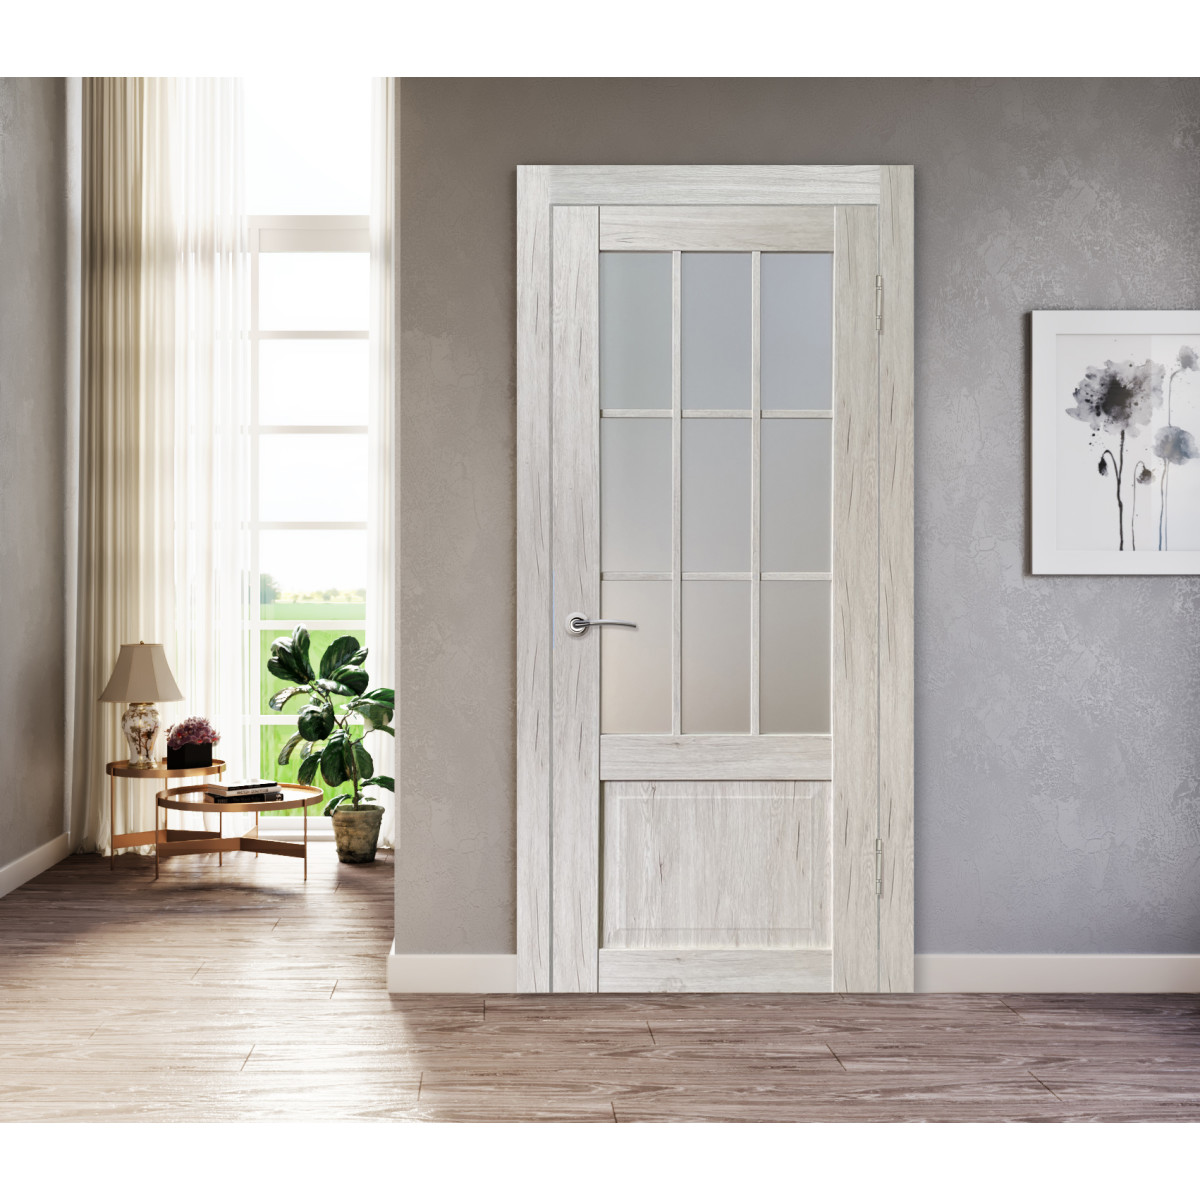 Дверь межкомнатная остеклённая Амелия 80х200 см с фурнитурой, ПВХ, цвет рустик серый